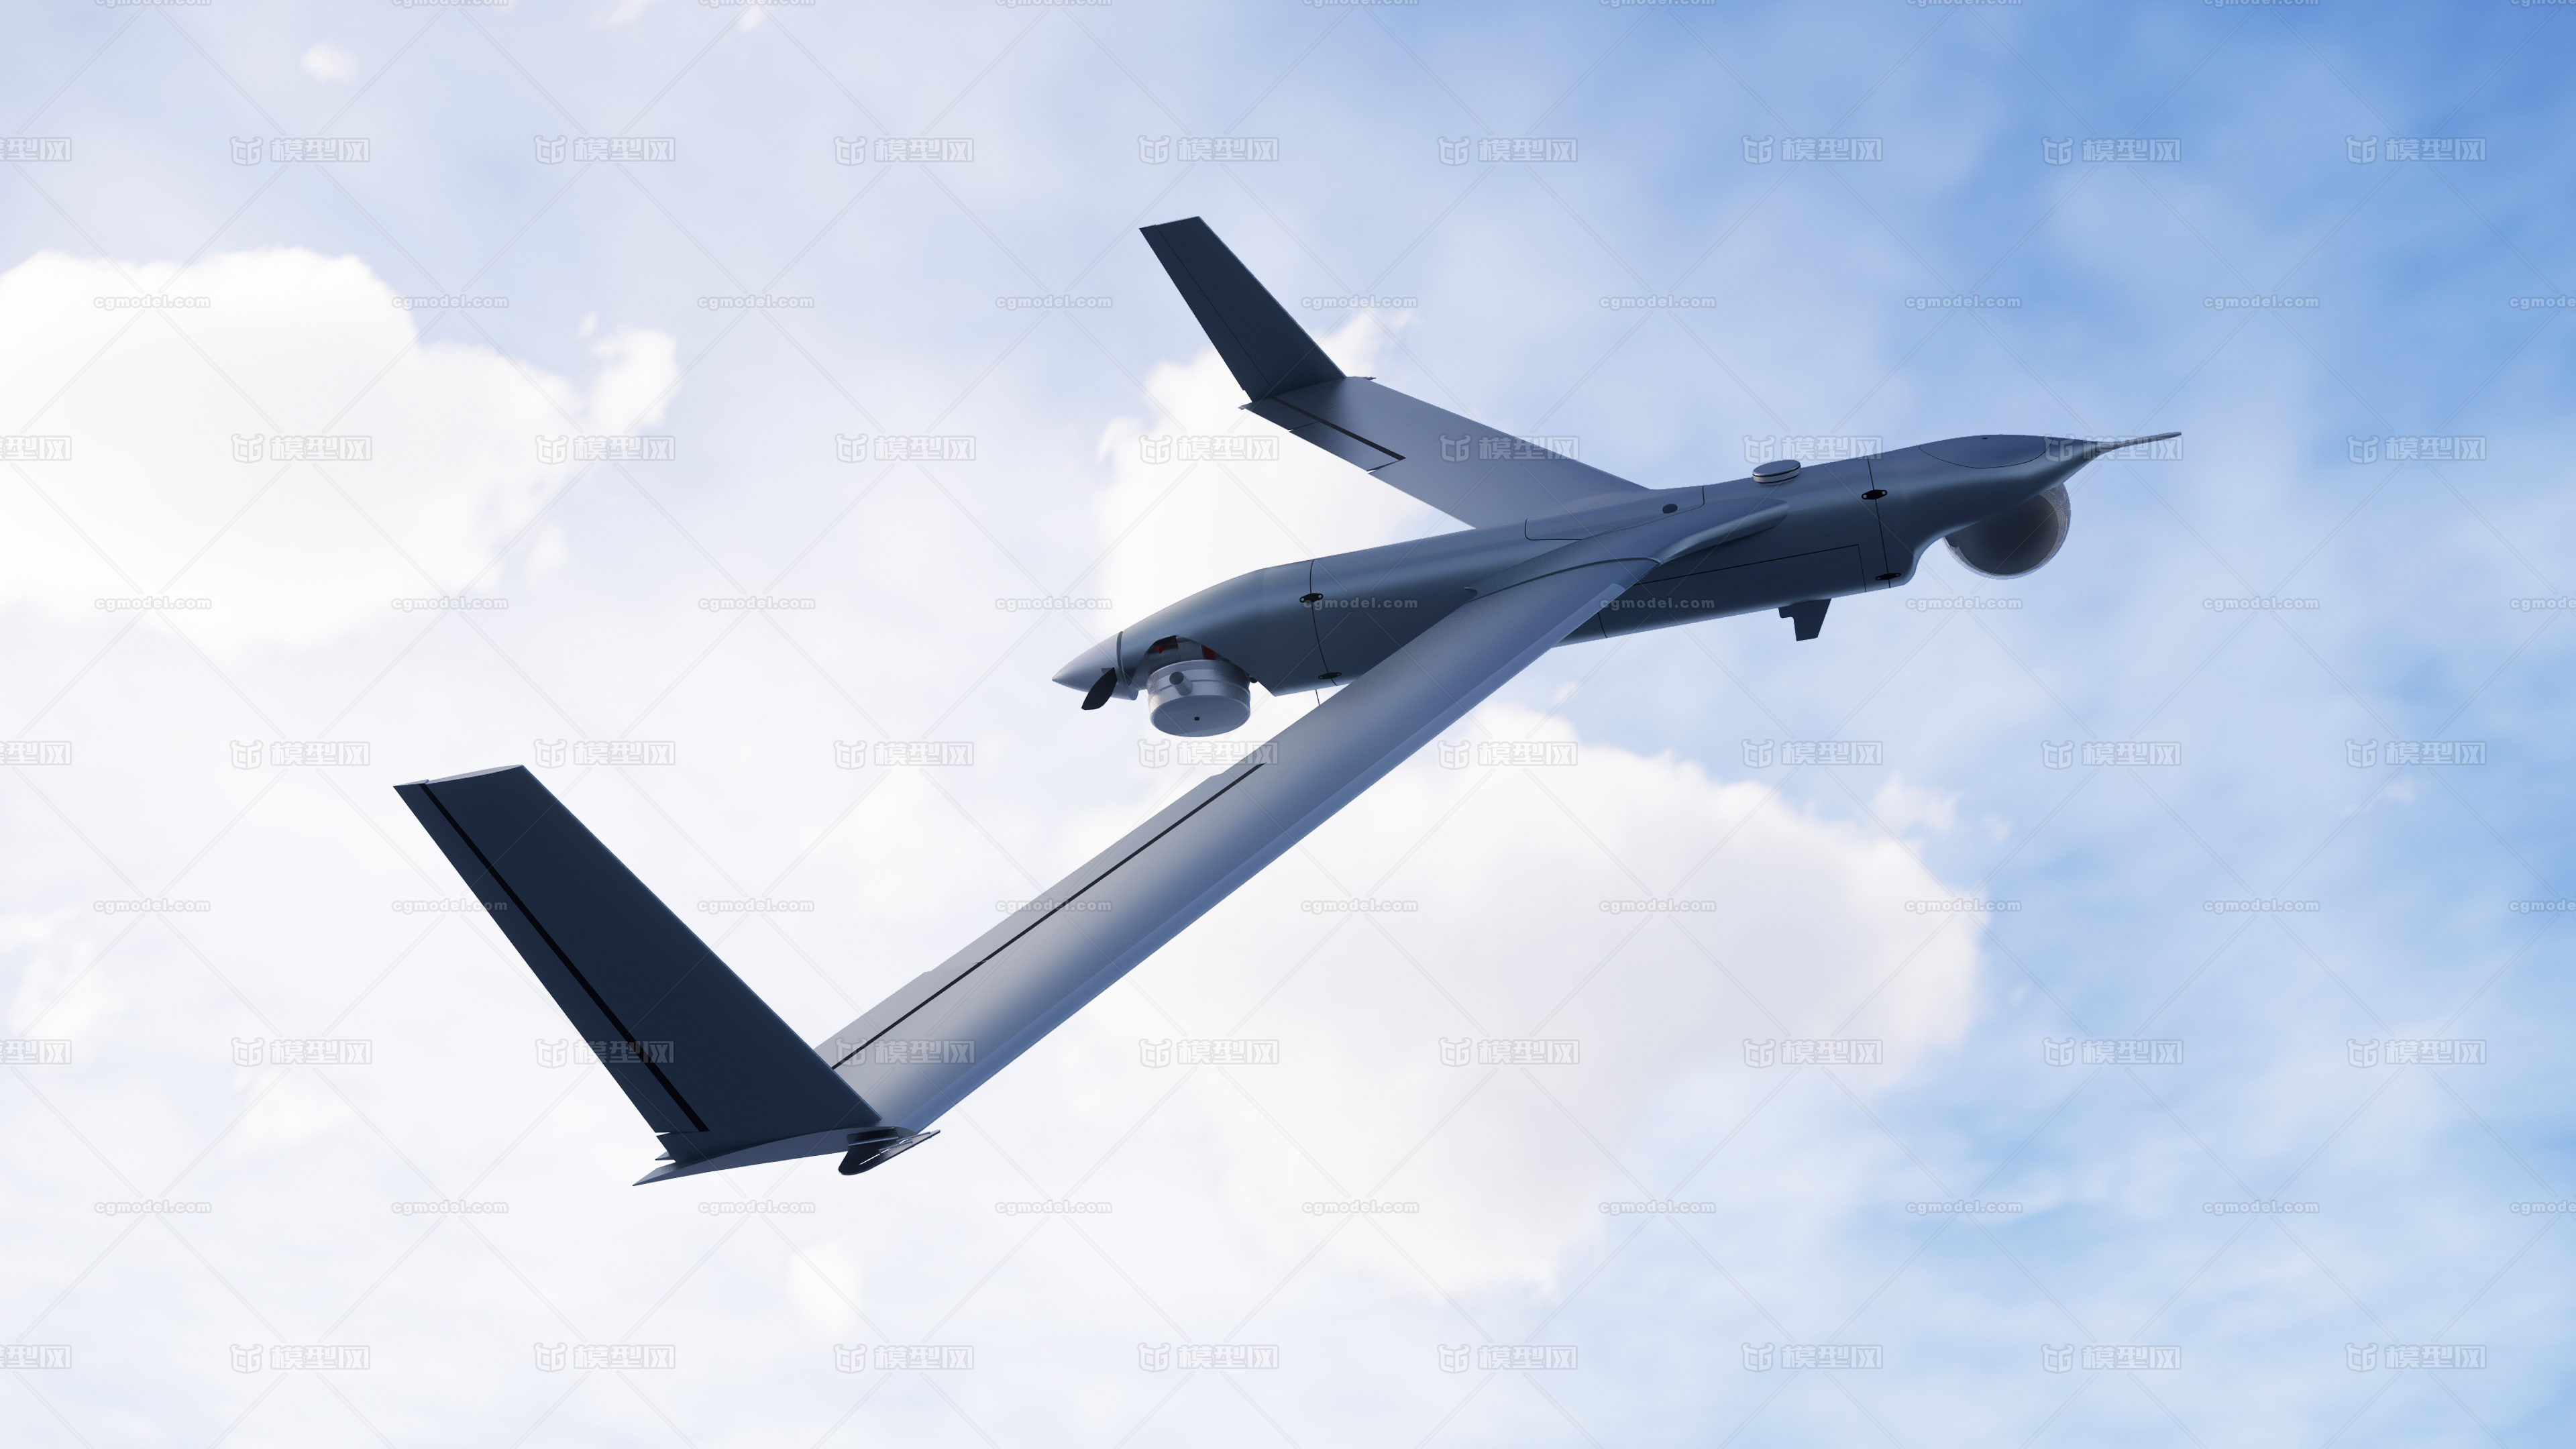 扫描鹰无人机(英文:scaneagle)是一种舰载小型无人机,由美国波音公司